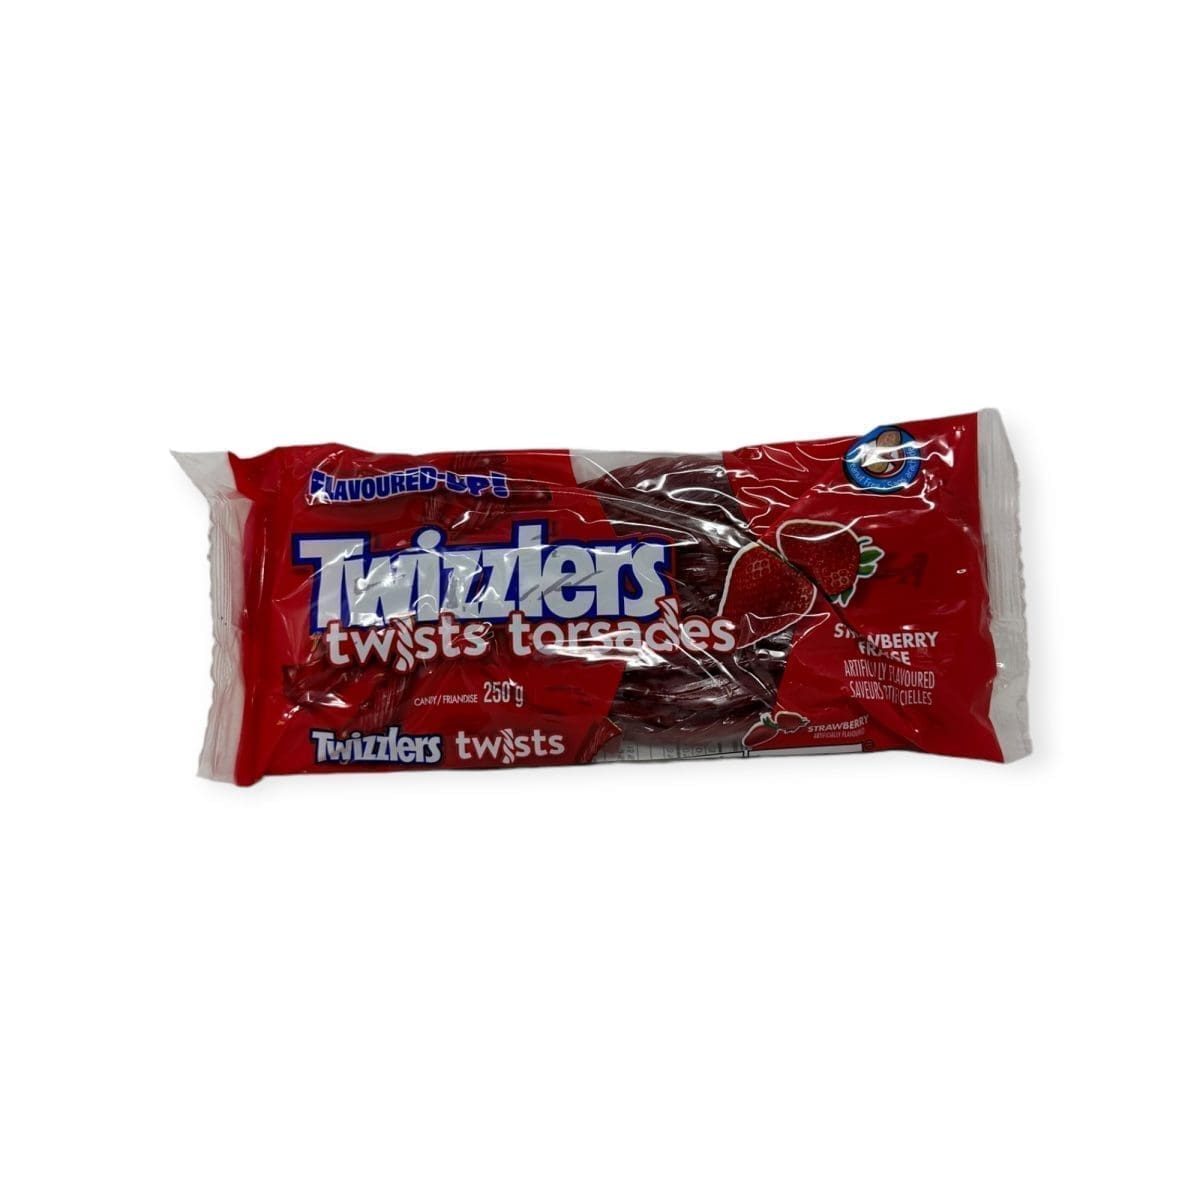 Twizzlers Twists Strawberry (250g)